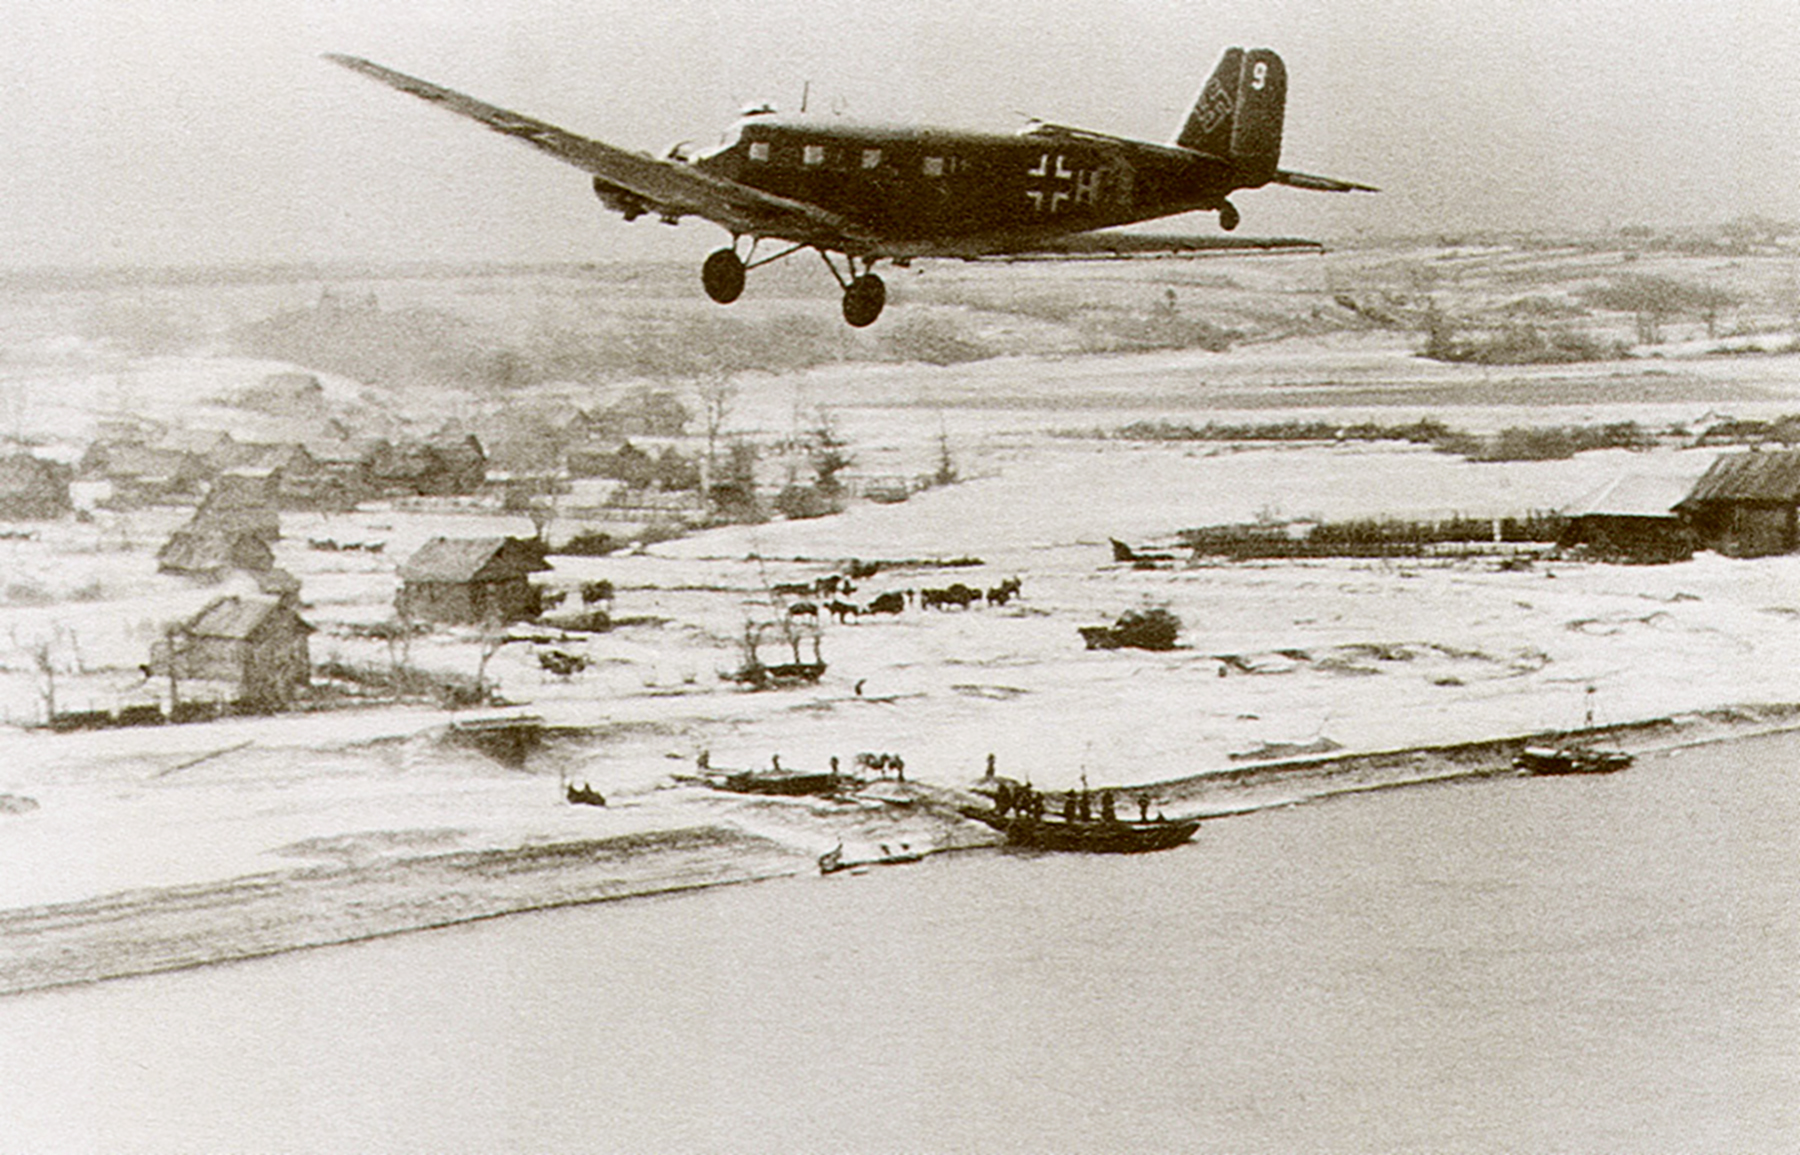 Ostfront Demyansk airlift Junkers Ju 52 1.KGrzbV9 4V+HH during the Feb 1942